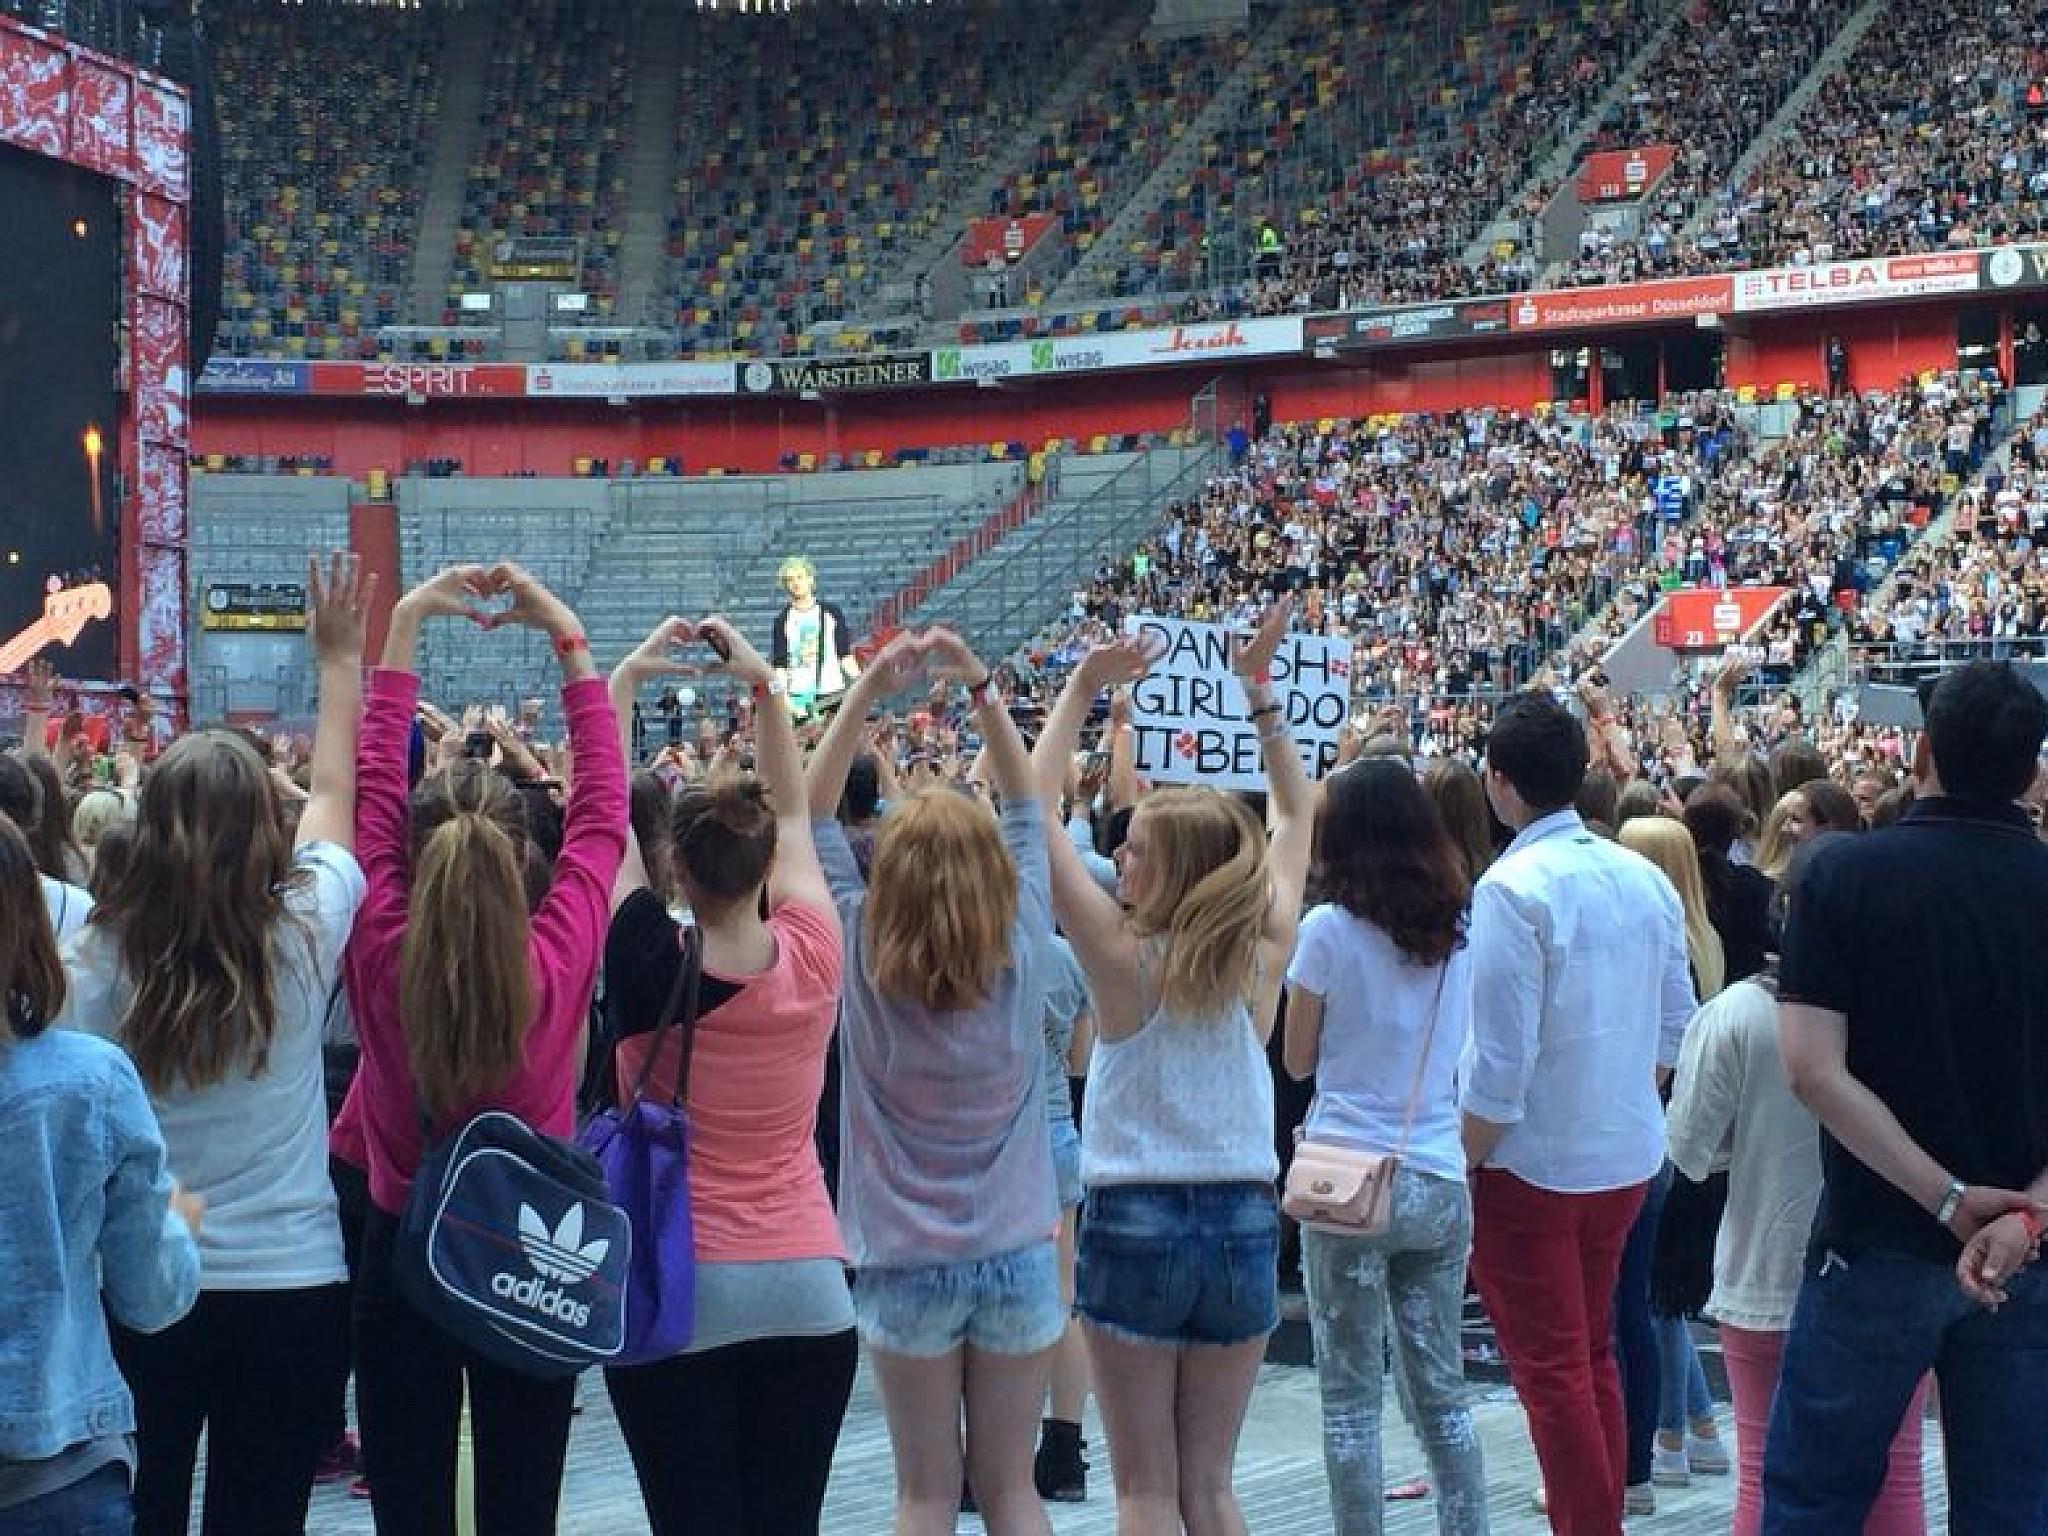 Kreisch-Alarm beim 'One Direction'-Konzert in Düsseldorf